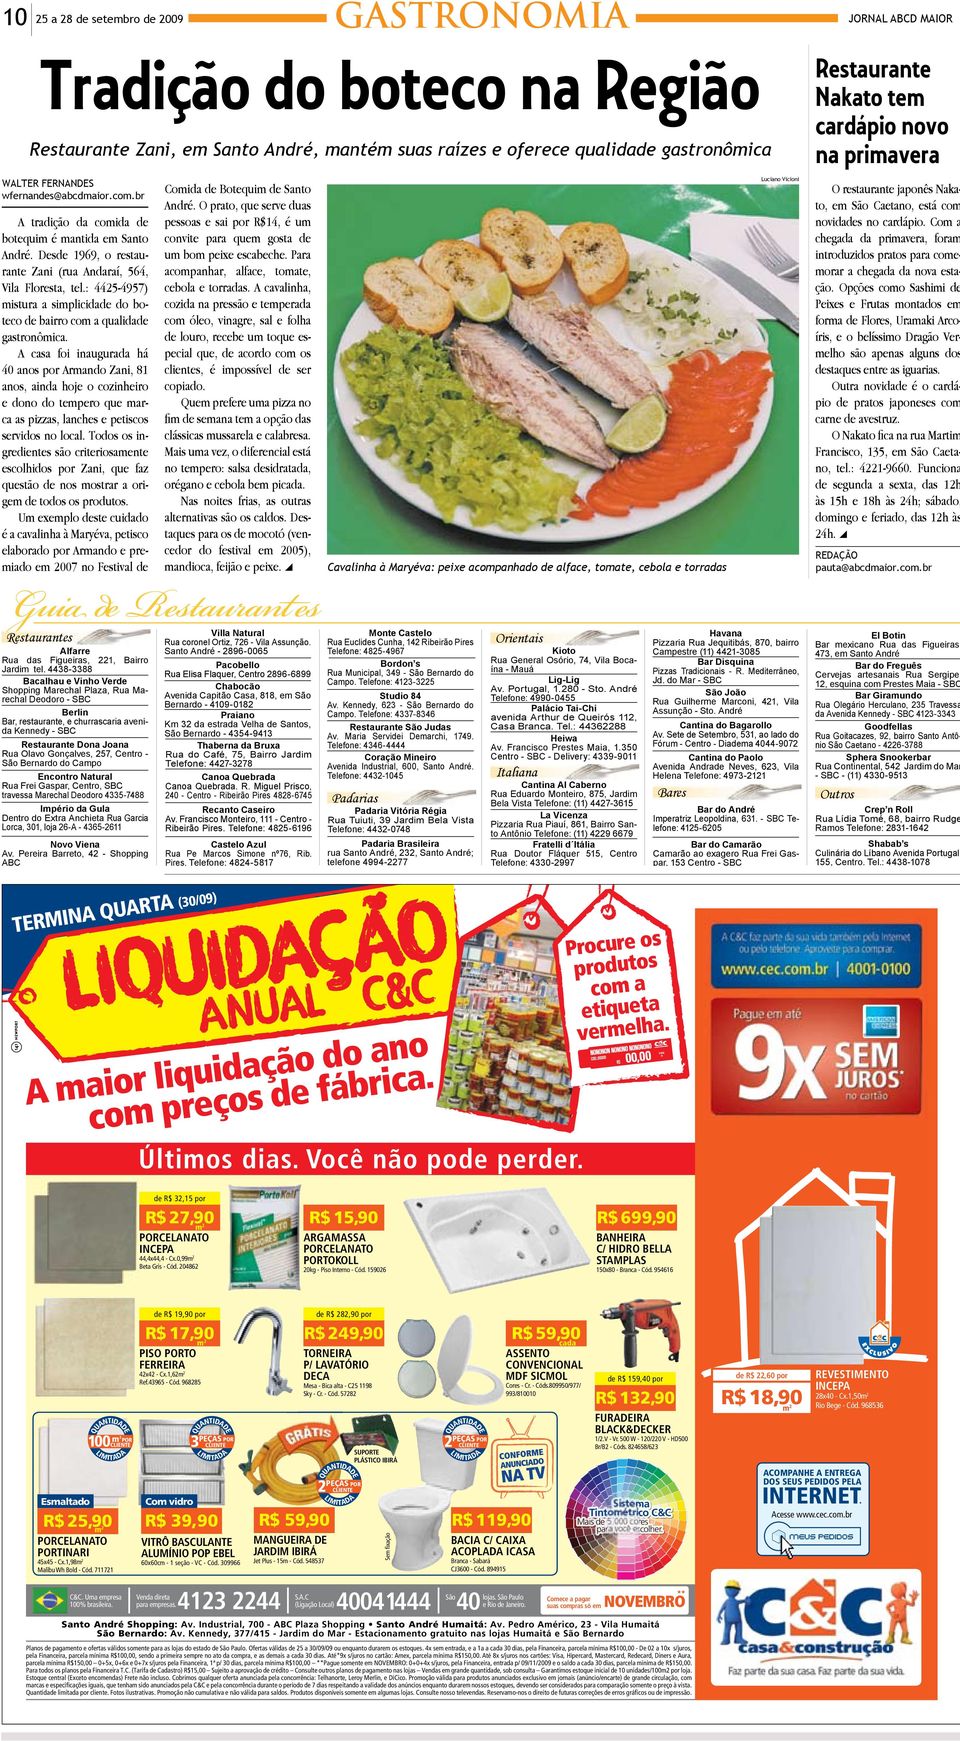 Desde 1969, o restaurante Zani (rua Andaraí, 564, acompanhar, alface, tomate, um bom peixe escabeche. Para Vila Floresta, tel.: 4425-4957) cebola e torradas.